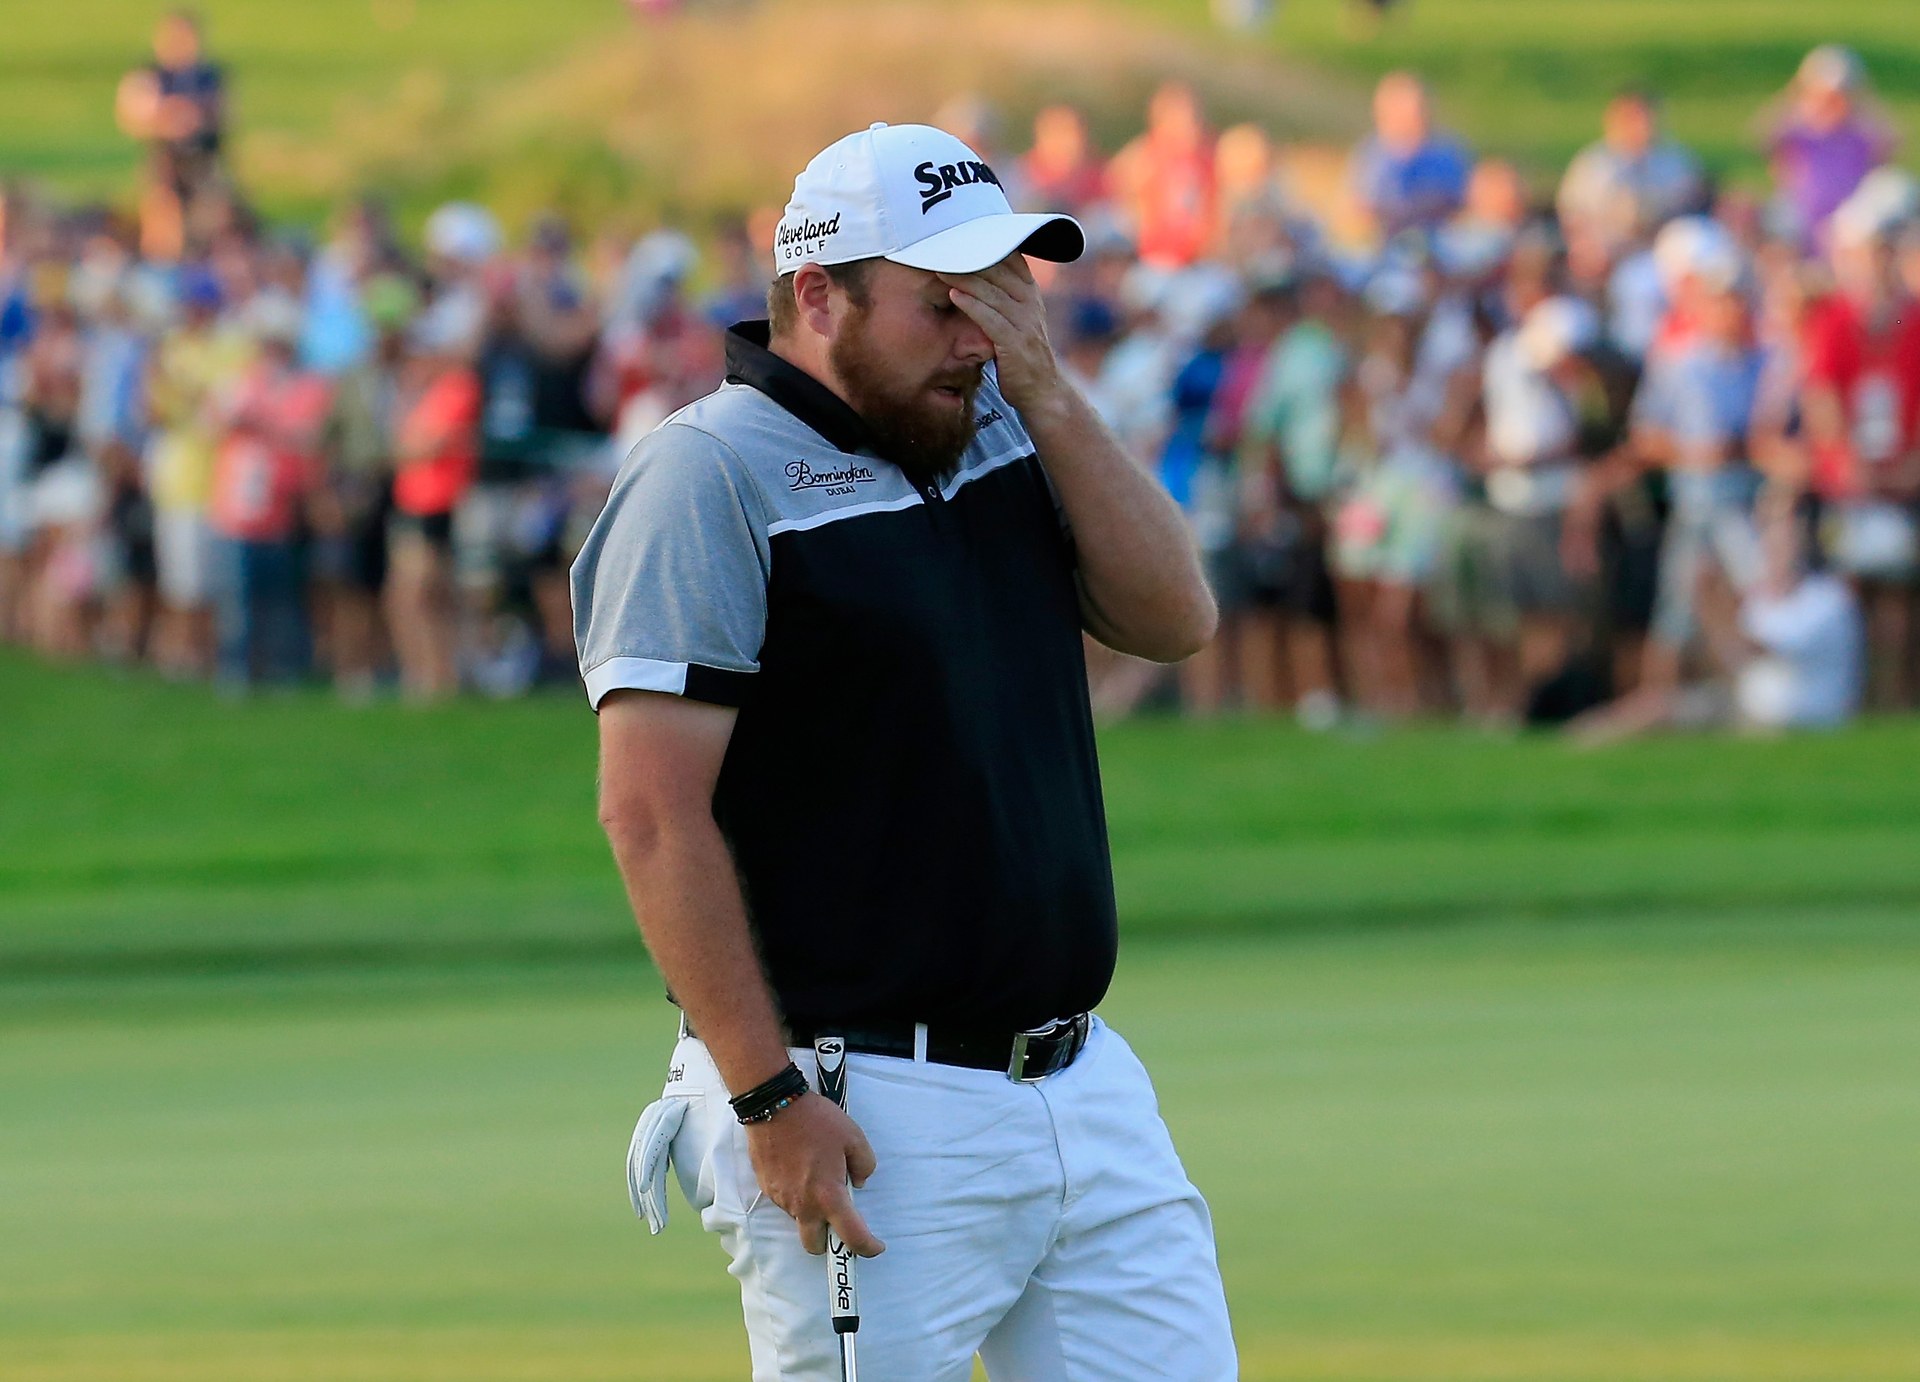 Golfer người Ireland chỉ trích trọng tài sau tranh cãi ở PGA Championship